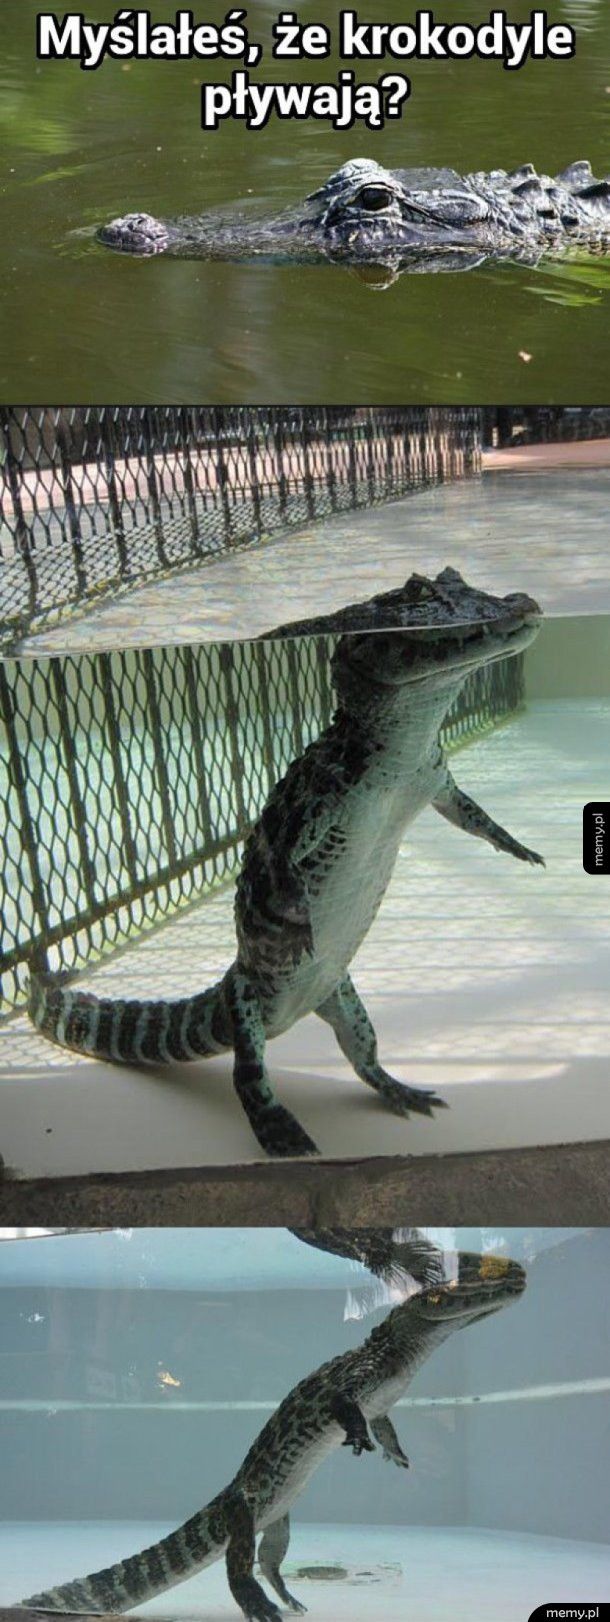 Myślałeś że krokodyle pływają?